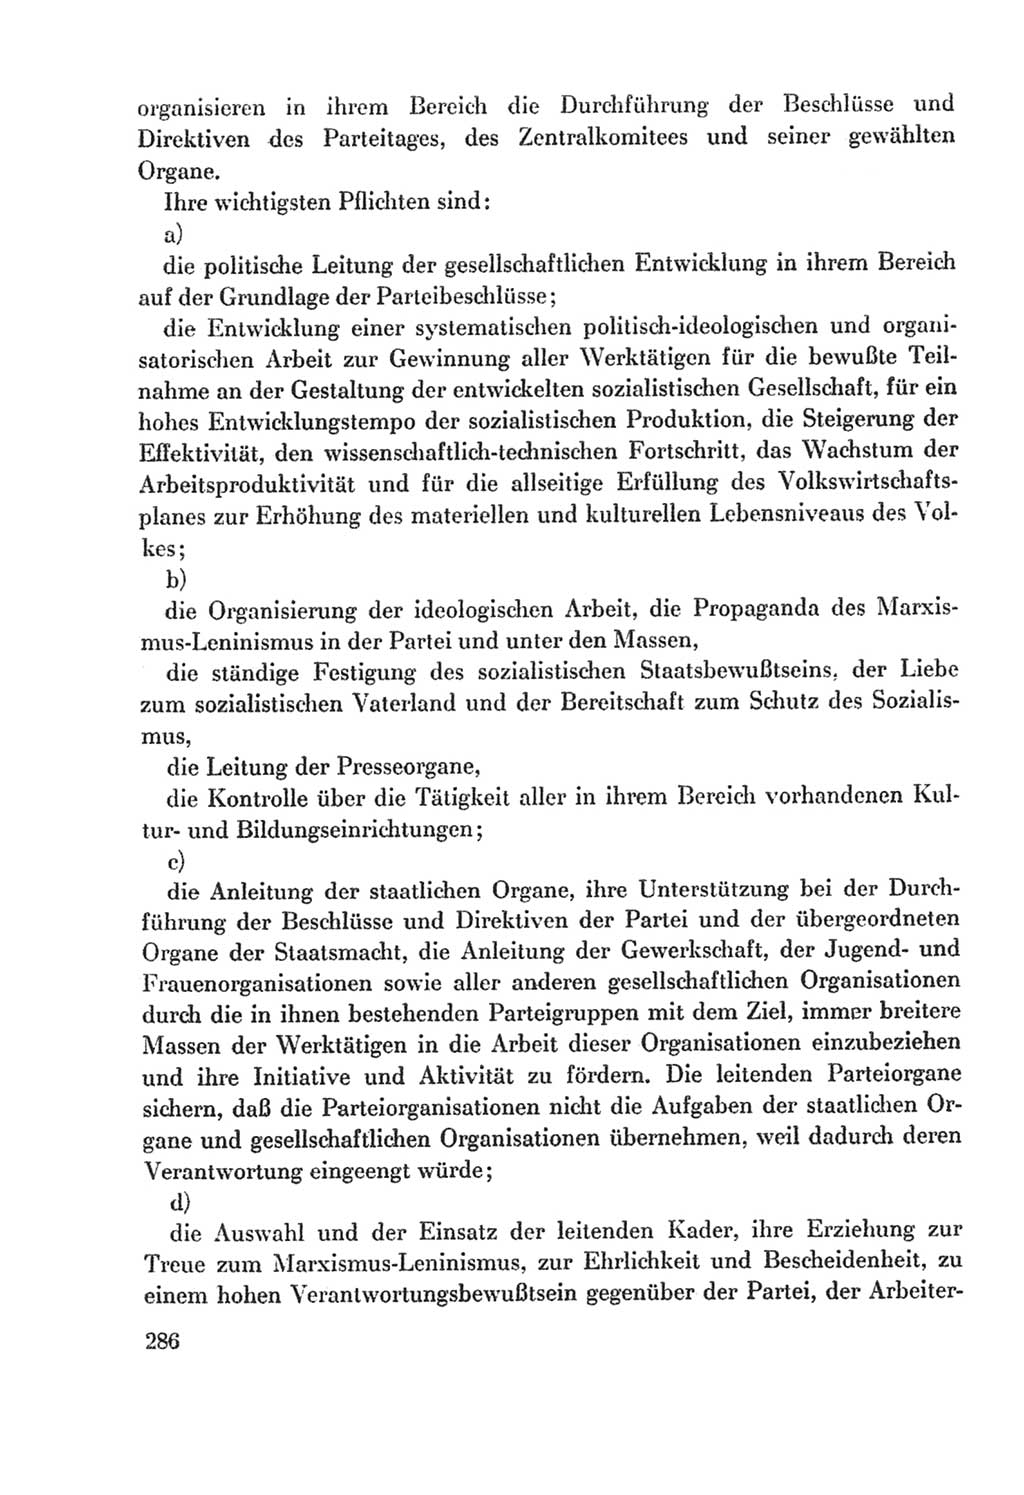 Protokoll der Verhandlungen des Ⅸ. Parteitages der Sozialistischen Einheitspartei Deutschlands (SED) [Deutsche Demokratische Republik (DDR)] 1976, Band 2, Seite 286 (Prot. Verh. Ⅸ. PT SED DDR 1976, Bd. 2, S. 286)